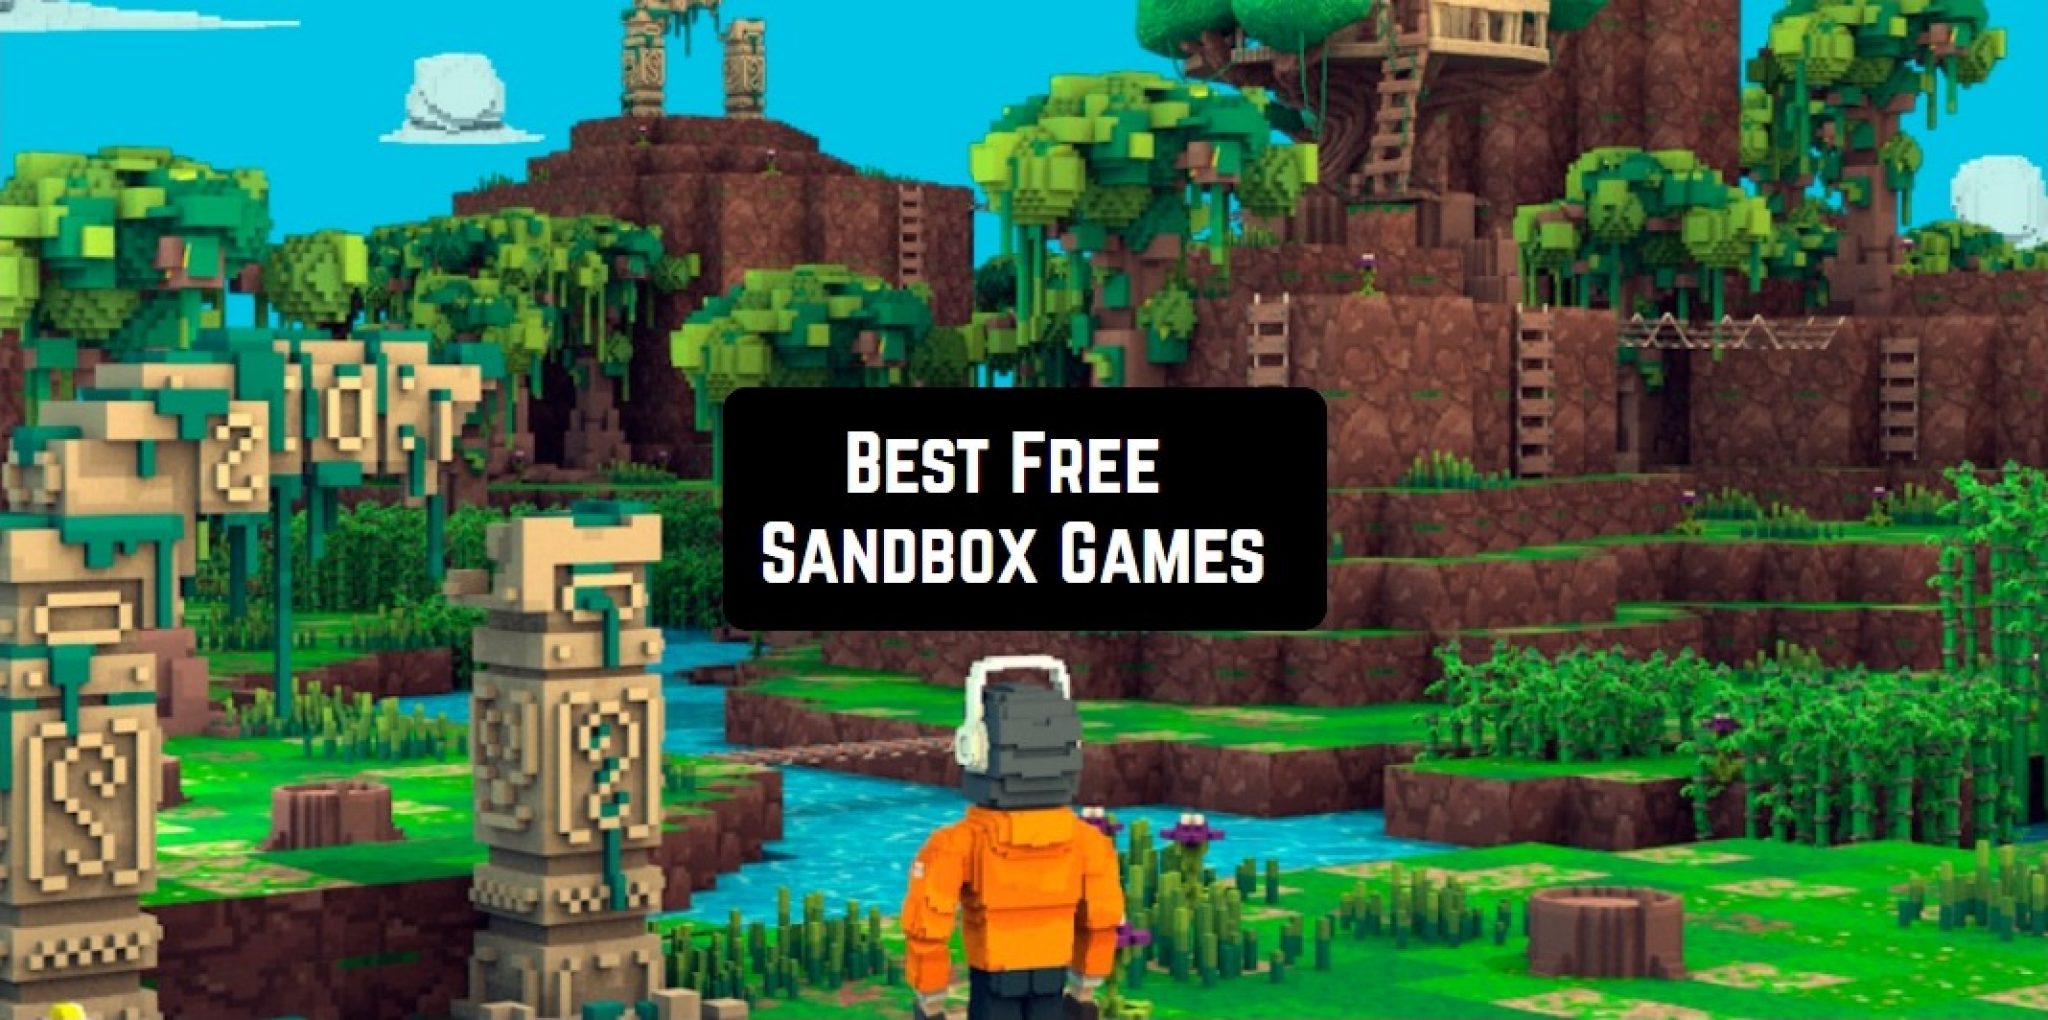 Free Sandbox Games 2048x1020 